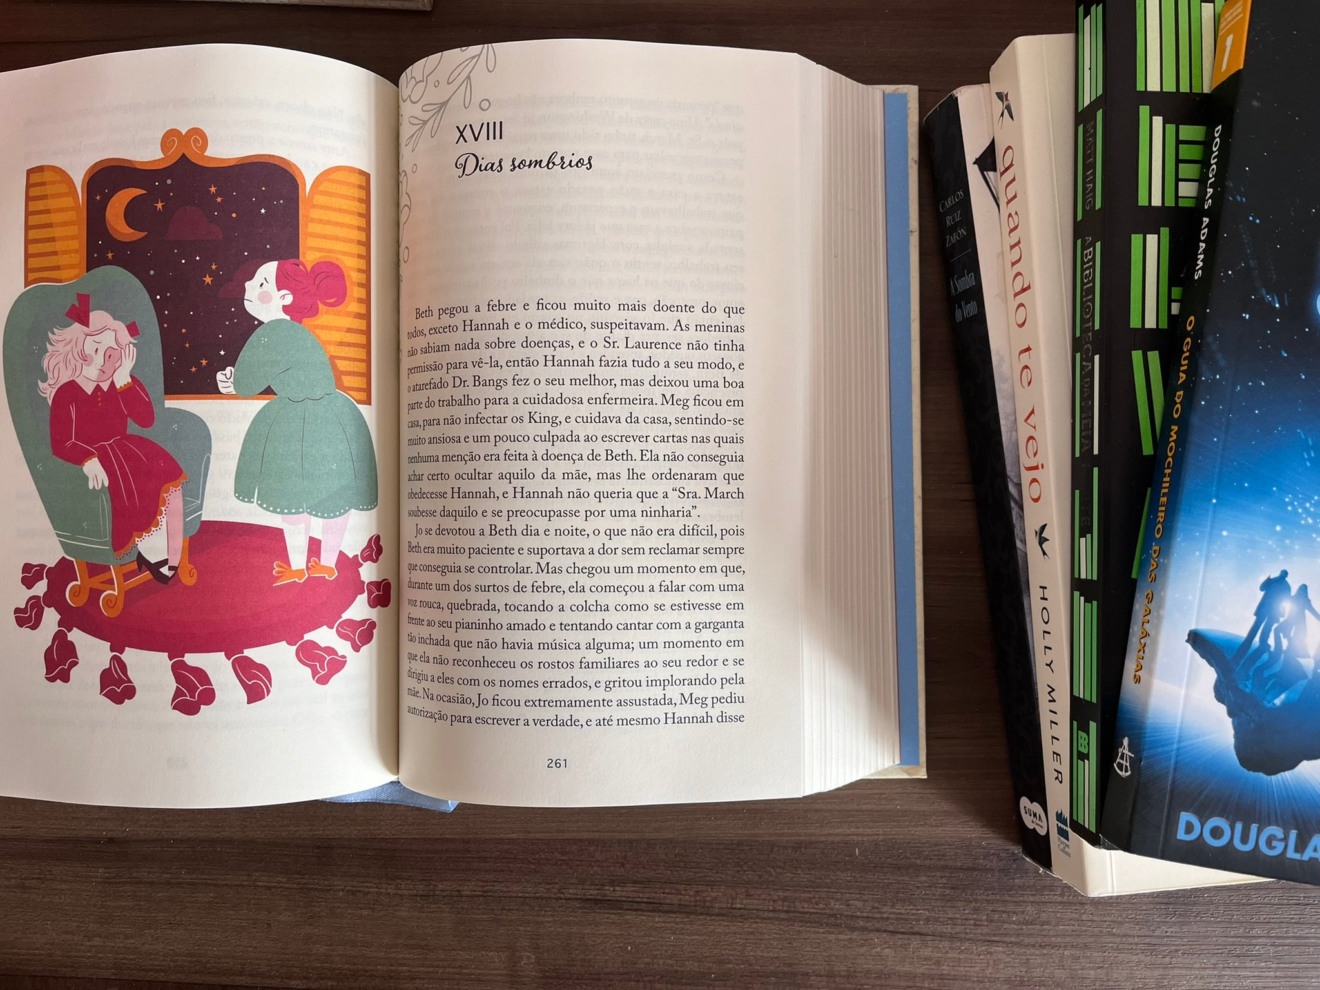 Livro "Mulherzinhas", de Louisa May Alcott, está aberto em cima de uma mesa na página 261, onde começa o capítulo 18, "Dias Sombrios"